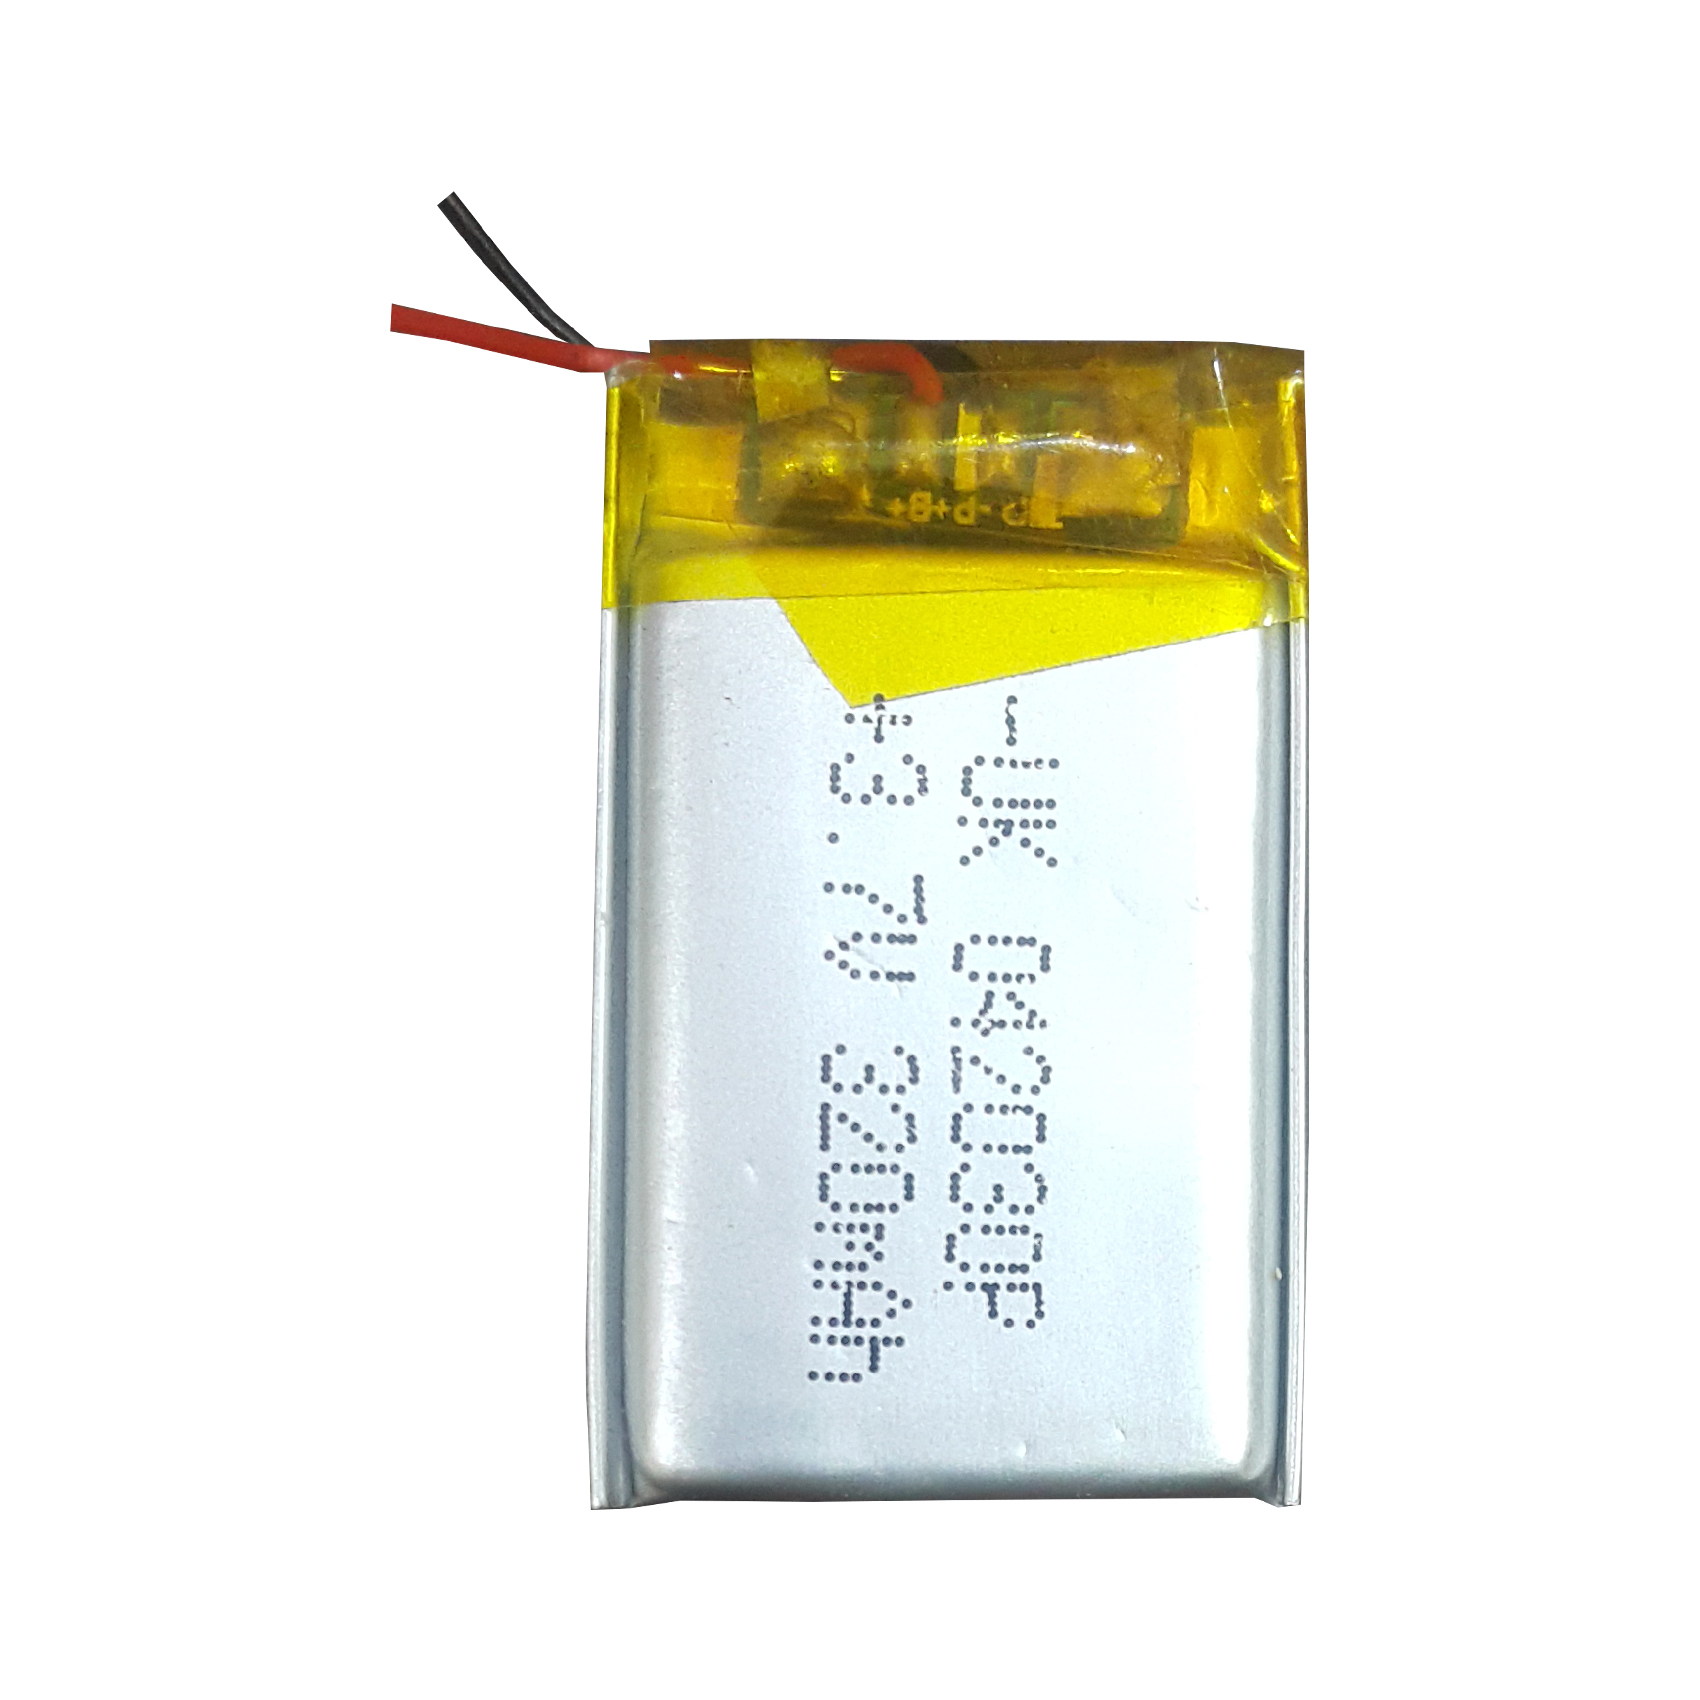 باتری لیتیوم یون قابل شارژ کد uk 042030p ظرفیت 320 میلی آمپر ساعت